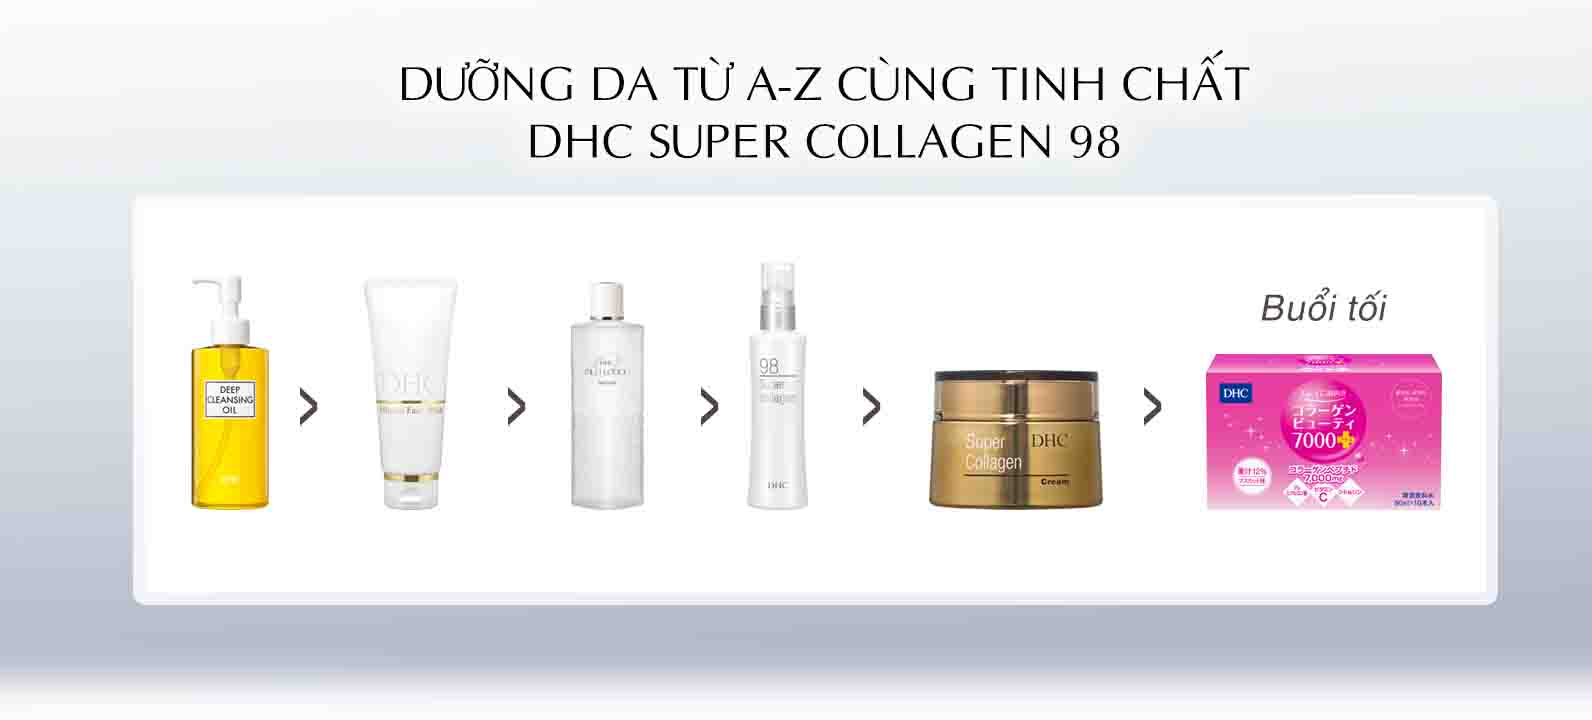 Dưỡng da cùng tinh chất collagen 98 DHC